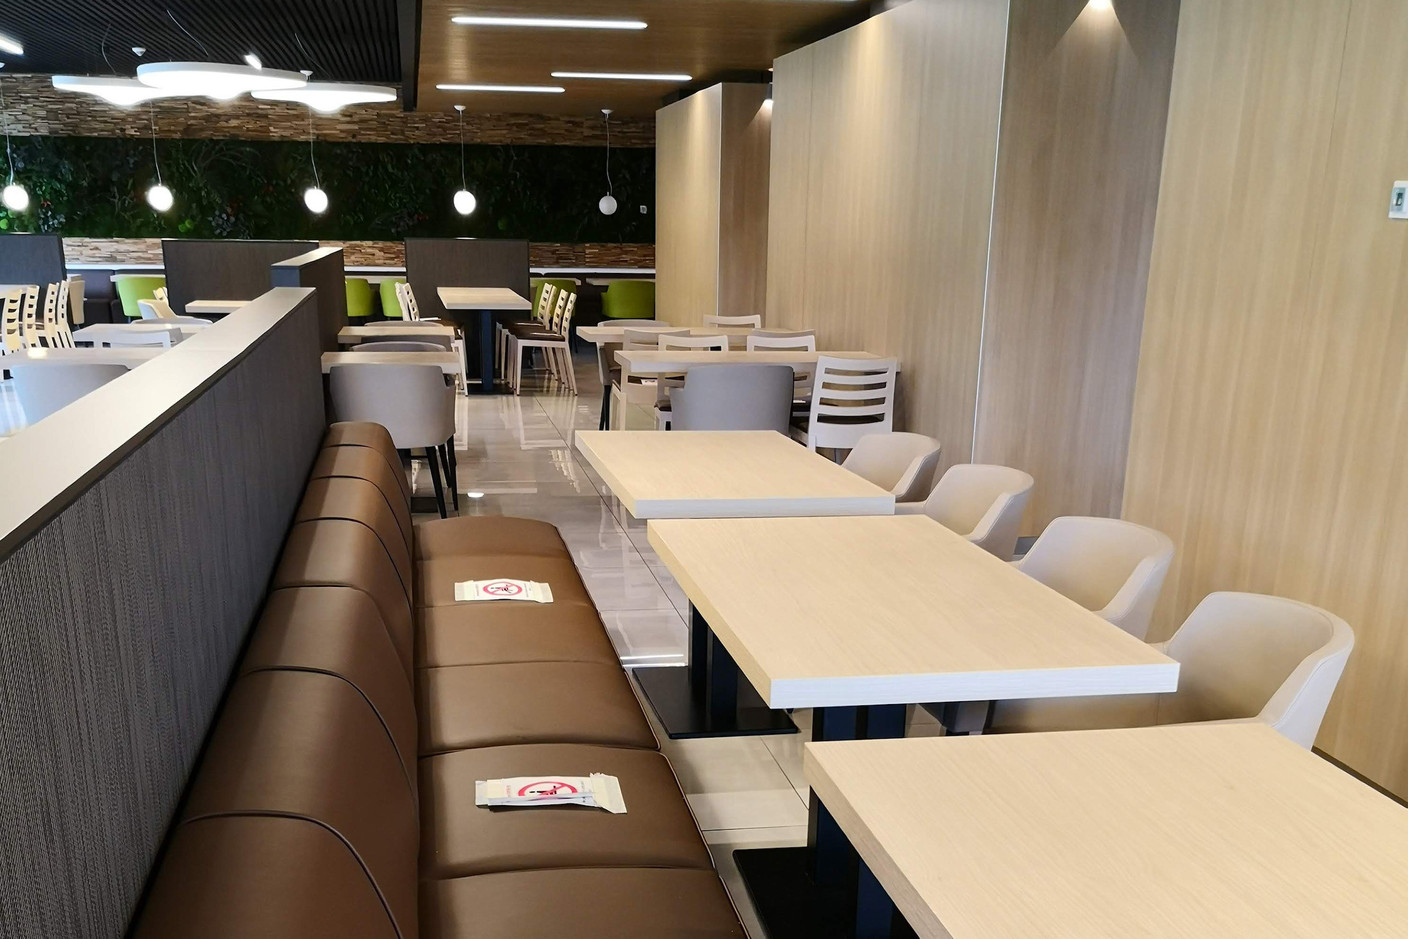 Le restaurant d’entreprise a rouvert début juin, avec une offre réduite et un aménagement des tables.  (Photo: Foyer)